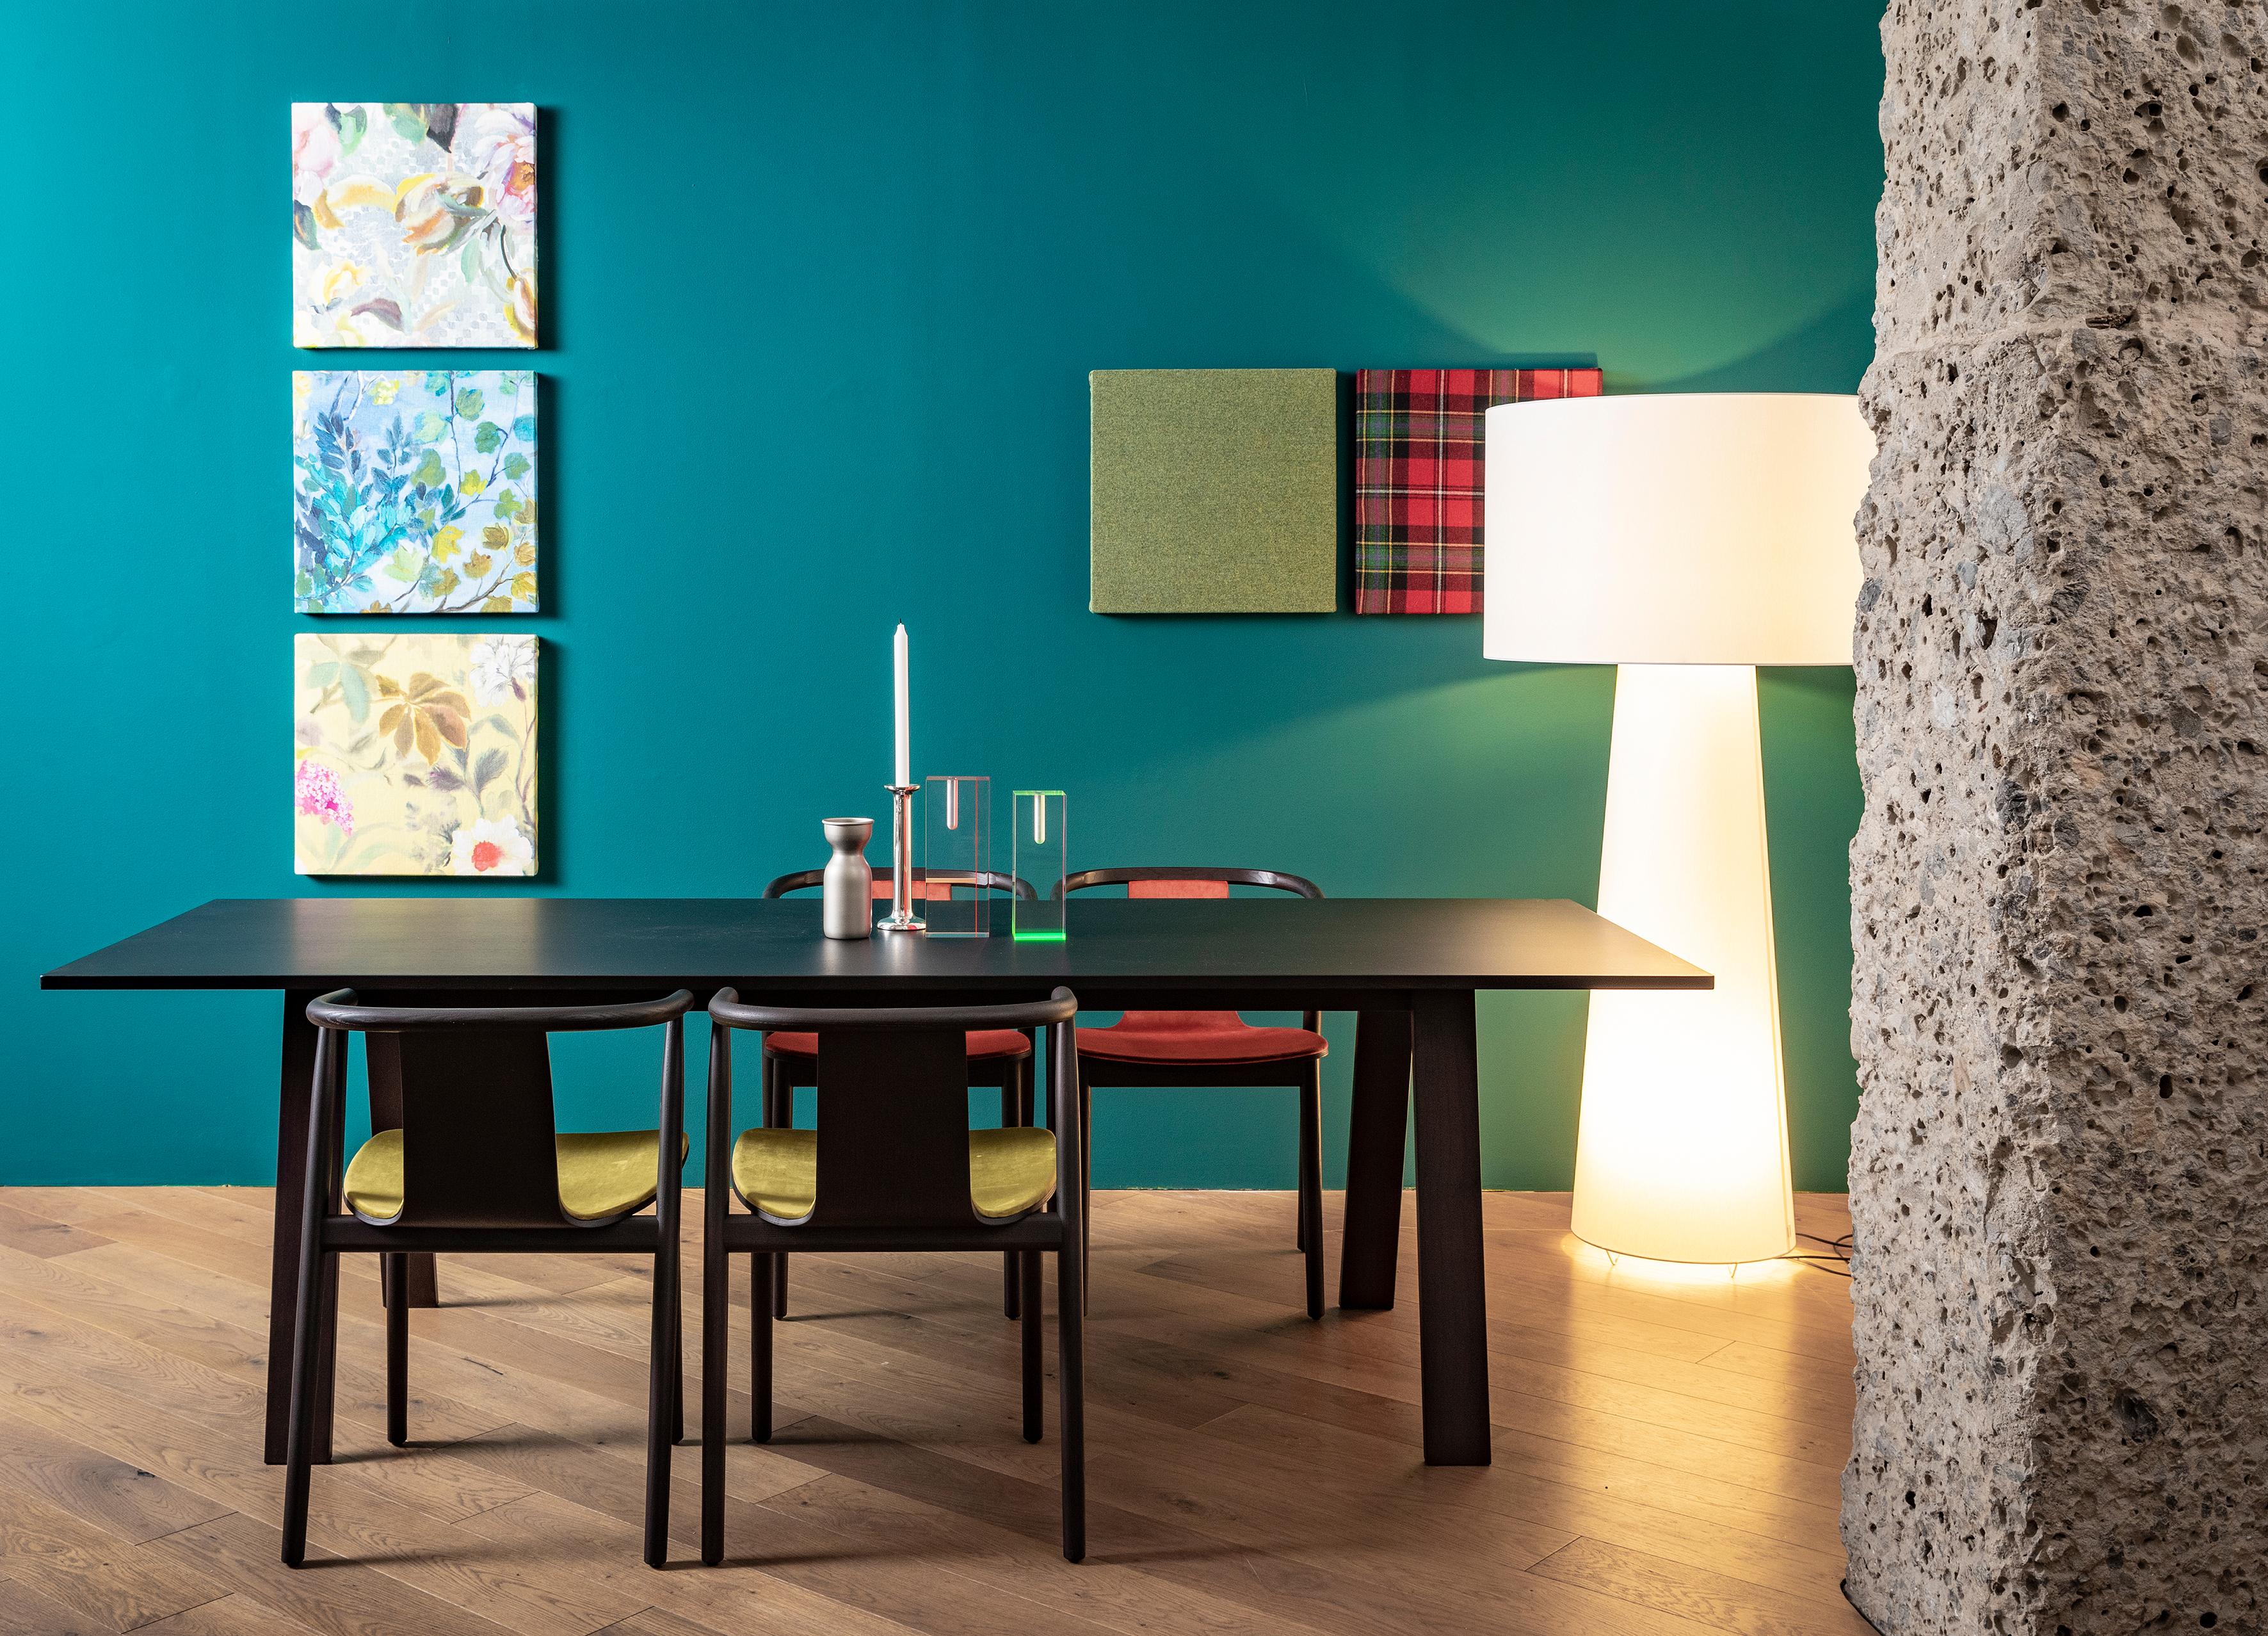 Der von Jasper Morrison entworfene Tisch Bac wird aus massivem Eschenholz in den Ausführungen gebleicht, wengégebeizt, shanghaiblau oder schwarz gebeizt hergestellt. Erhältlich in runder und rechteckiger Ausführung.
 
Platte: Holz- und